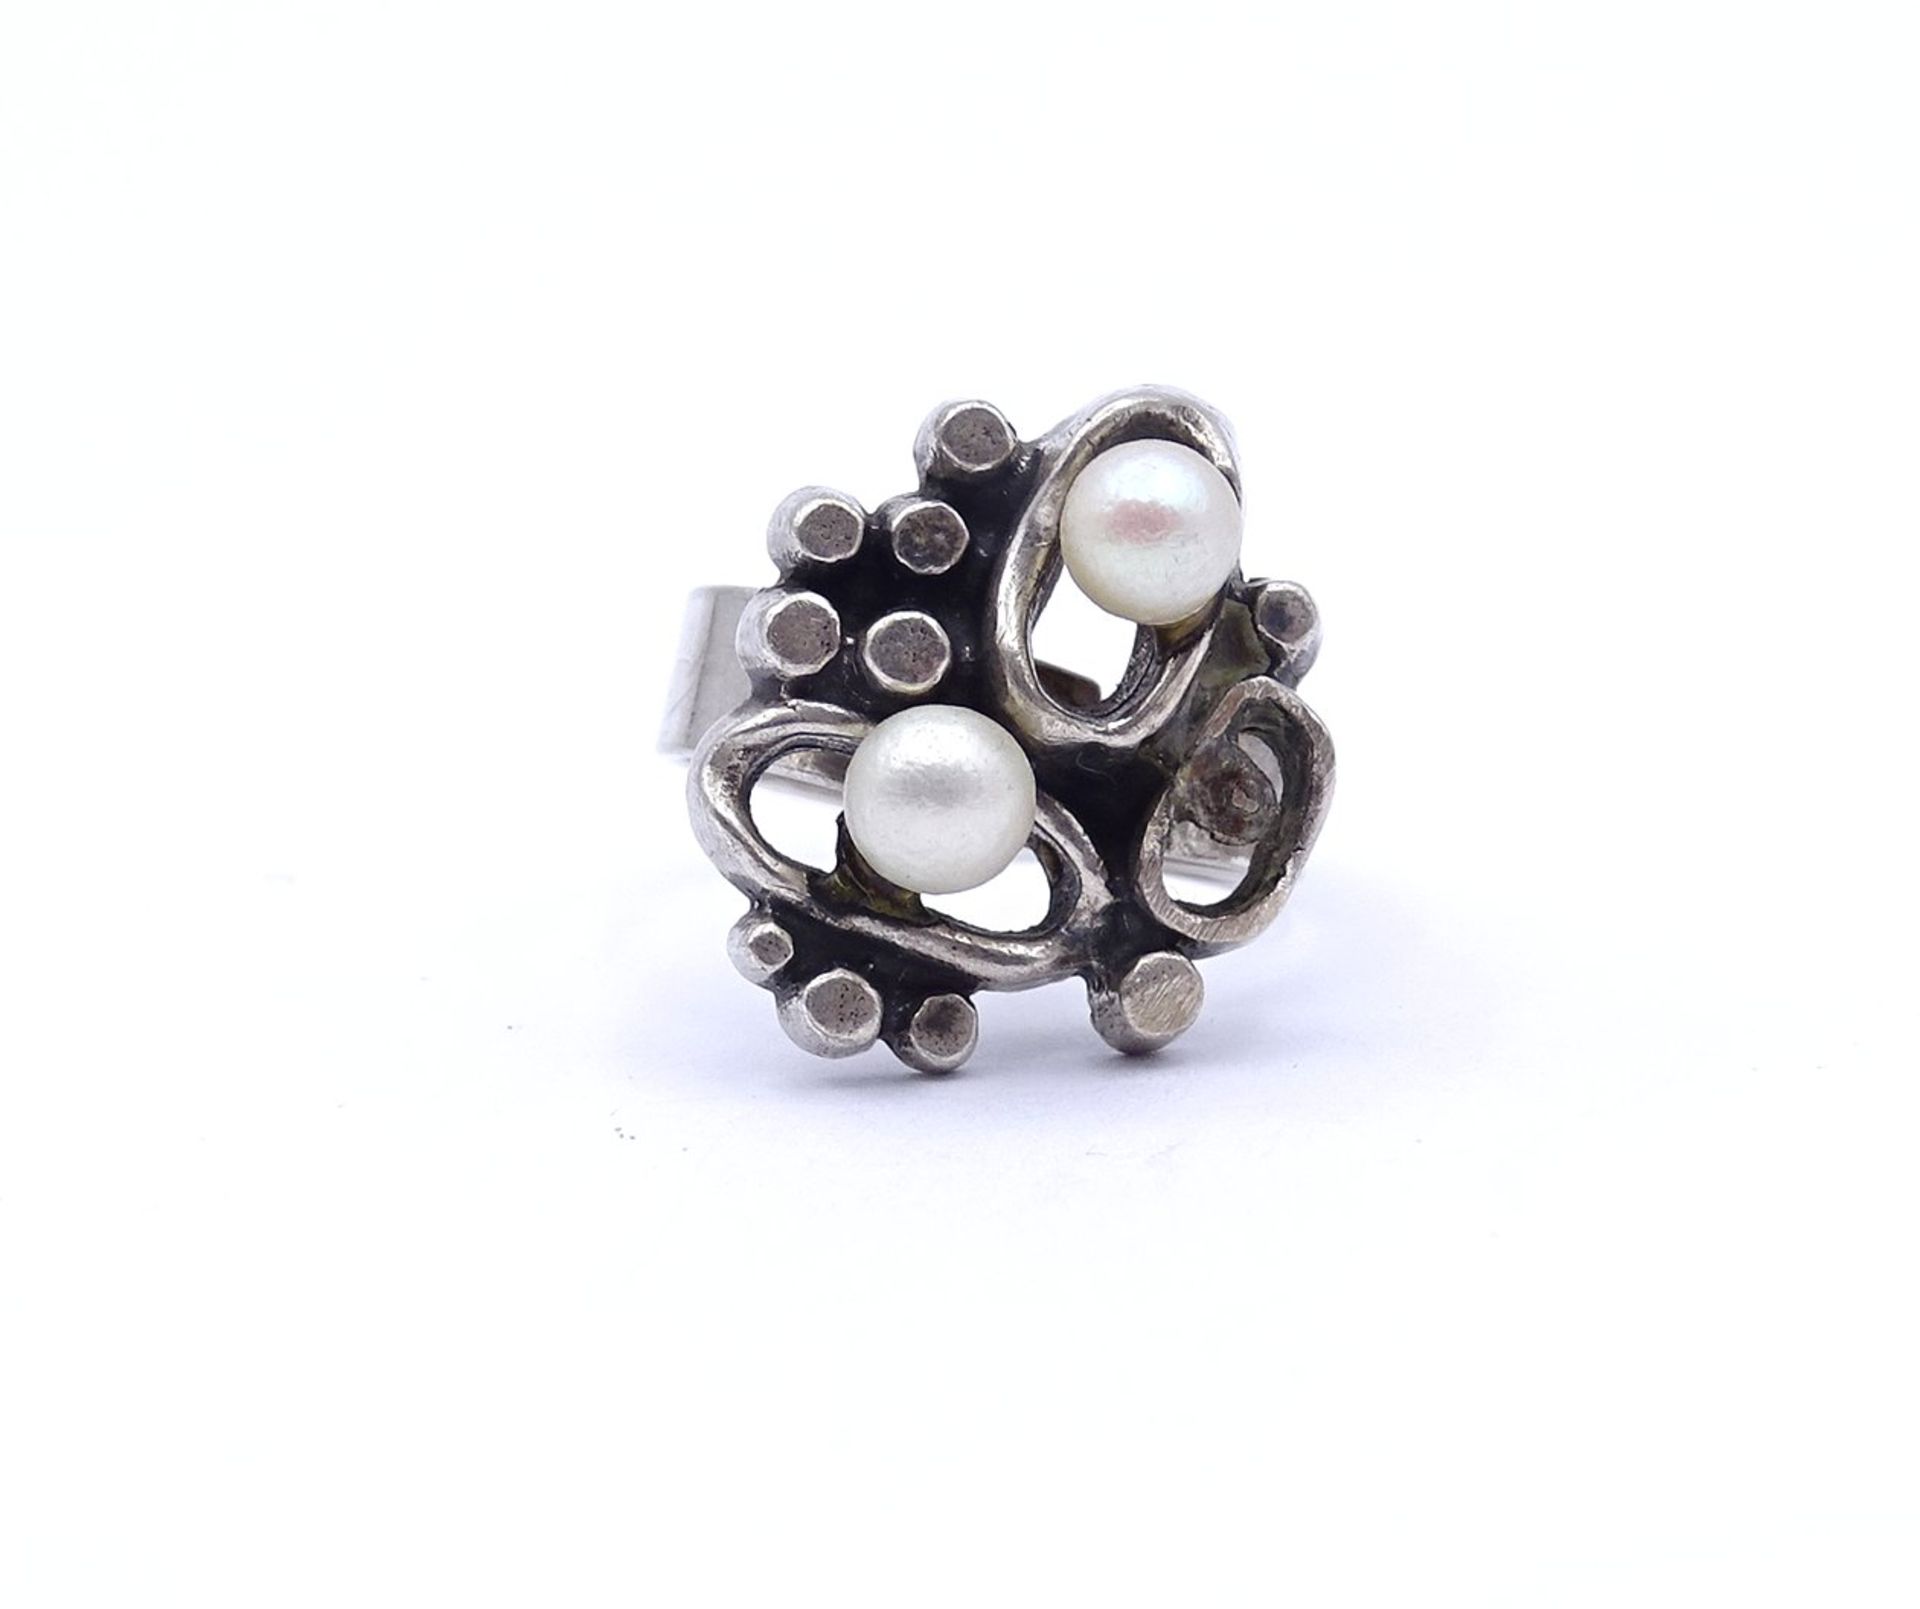 835er Silber Ring mit 2 Perlen, offene Ringschiene, 7,2g.,